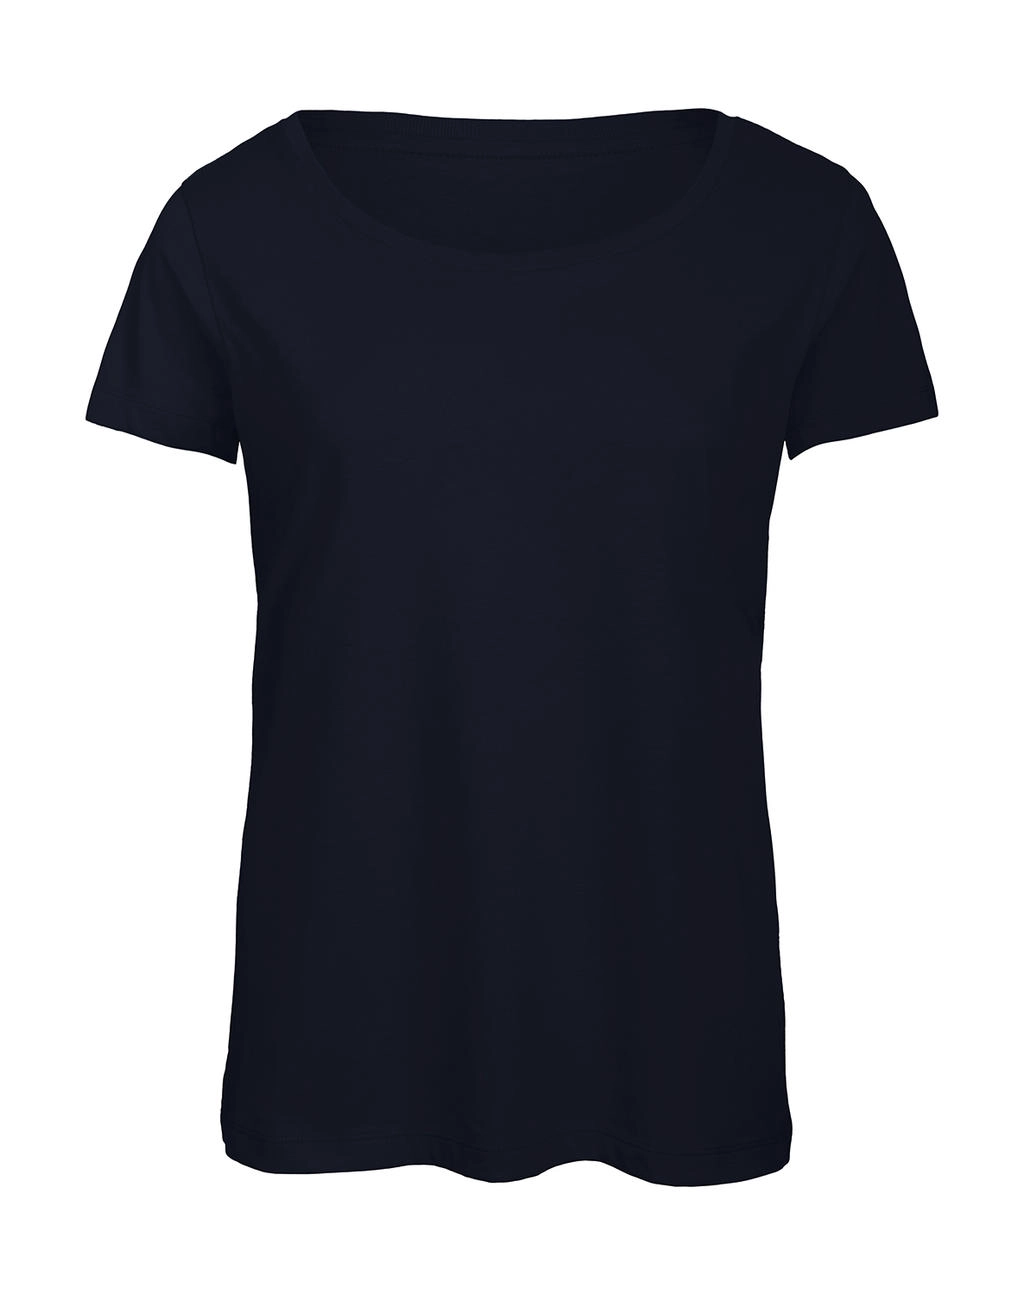 Triblend/women T-Shirt zum Besticken und Bedrucken in der Farbe Navy mit Ihren Logo, Schriftzug oder Motiv.